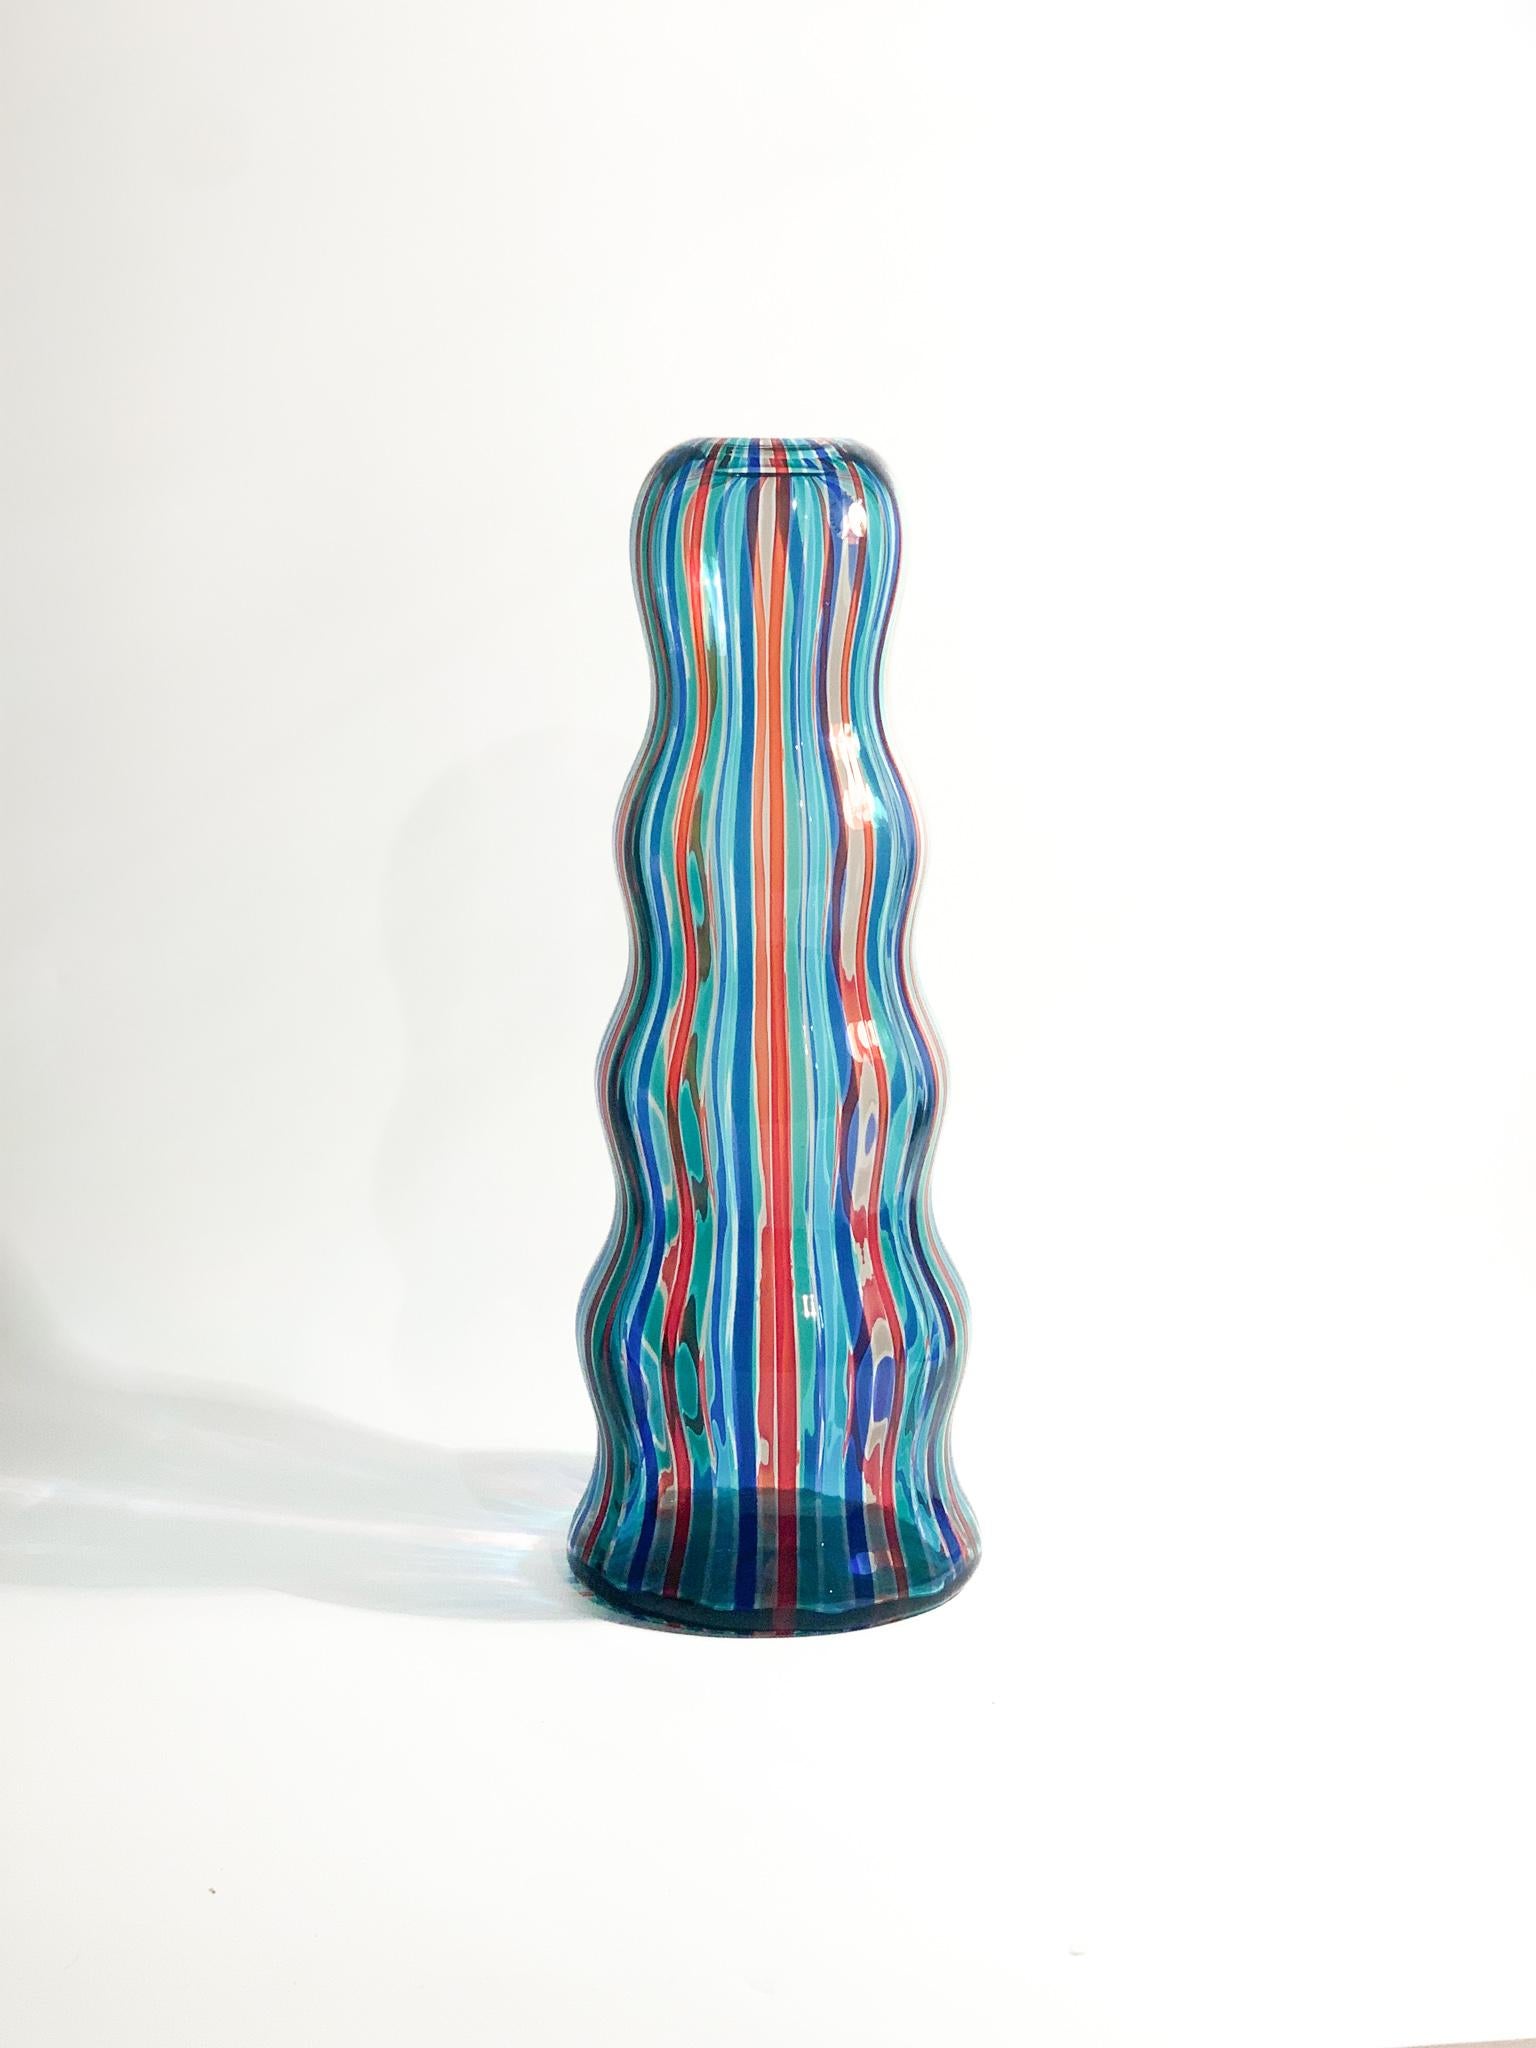 Vase 'Arado' aus Murano-Glas mit Rohrgeflecht, ein Entwurf von Alessandro Mendini für Venini aus dem Jahr 1988

Ø 14 cm h 38 cm

Alessandro Mendini gehörte seit Ende der 70er Jahre zu den Innovatoren des italienischen Designs. Er arbeitete für